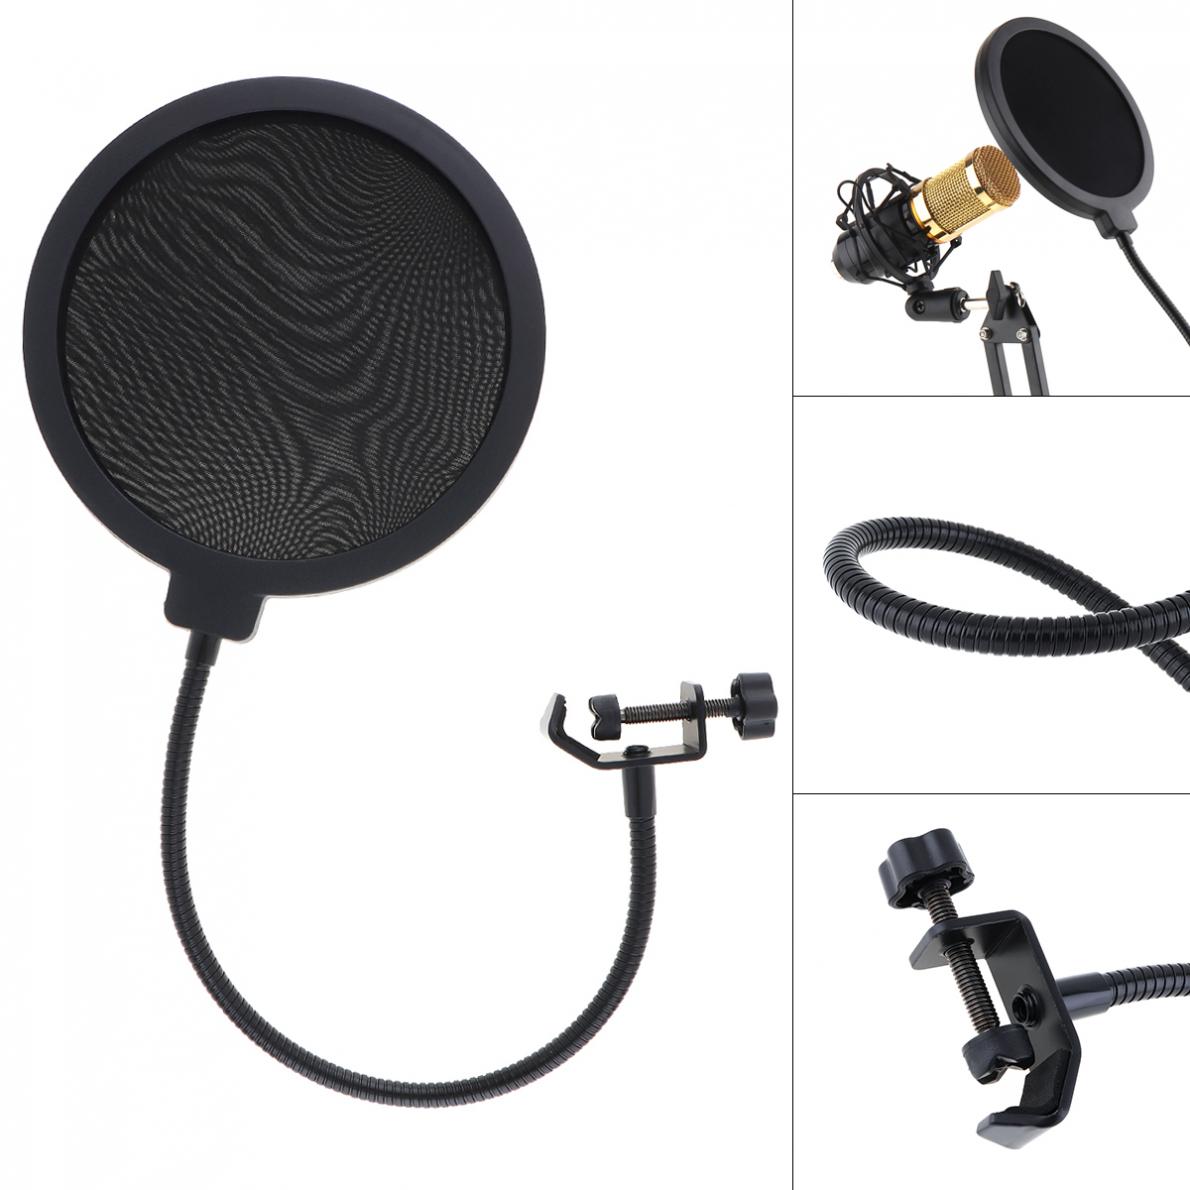 Layer Studio Microfoon Flexibele Wind Screen Mask Mic Pop Filter Shield Voor Spreken Recording Accessoires